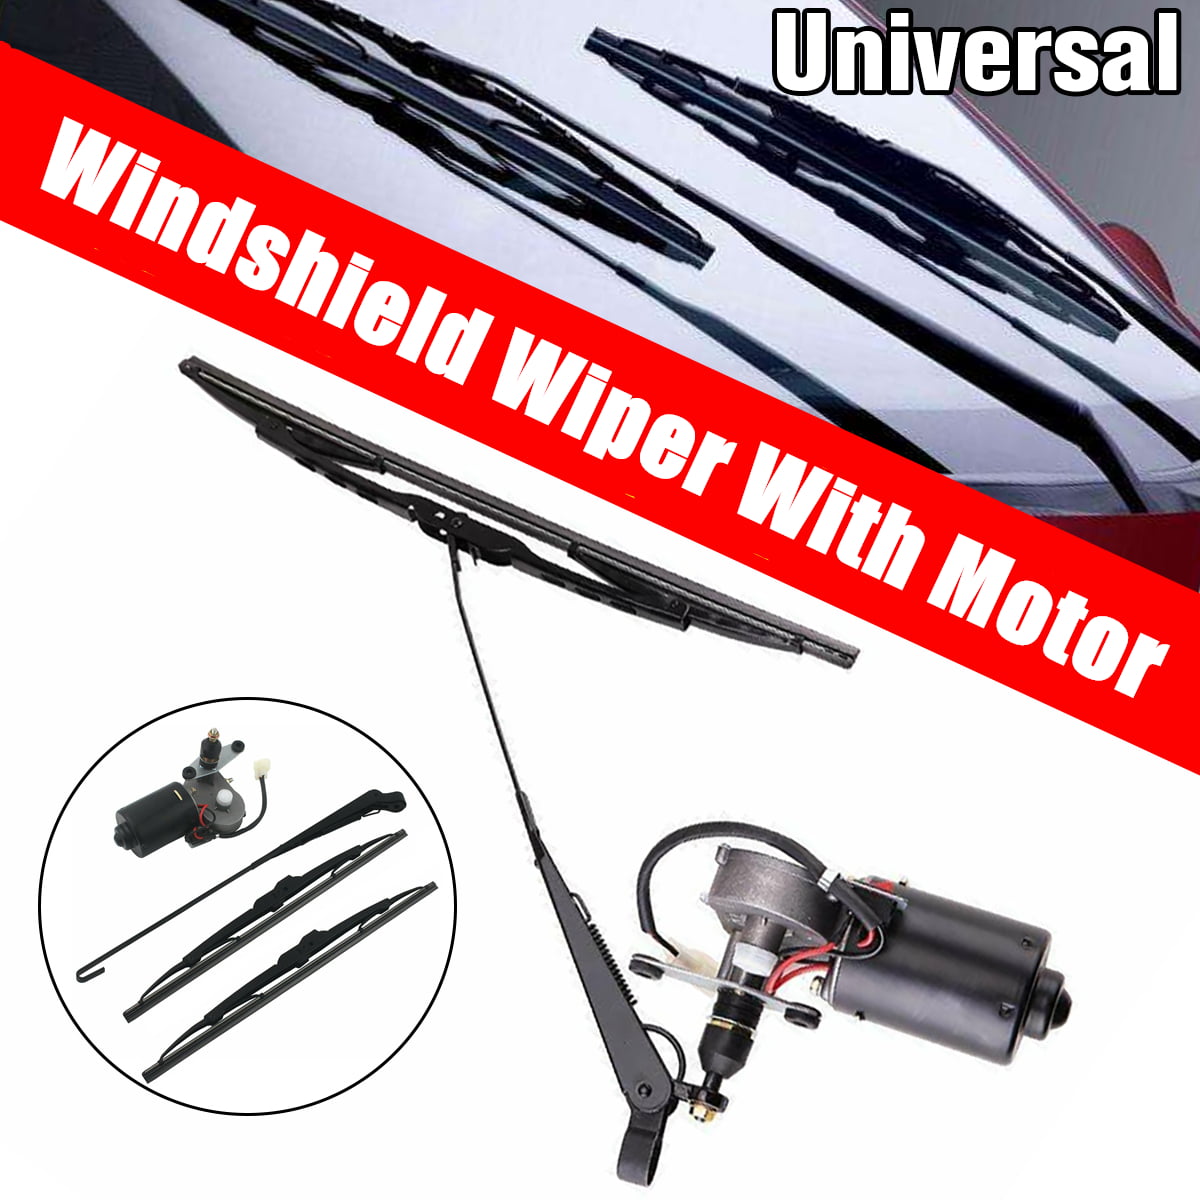 UTV 12V Electric Windshield Wiper Motor Kit for Polaris RZR fit for Kawasaki US 